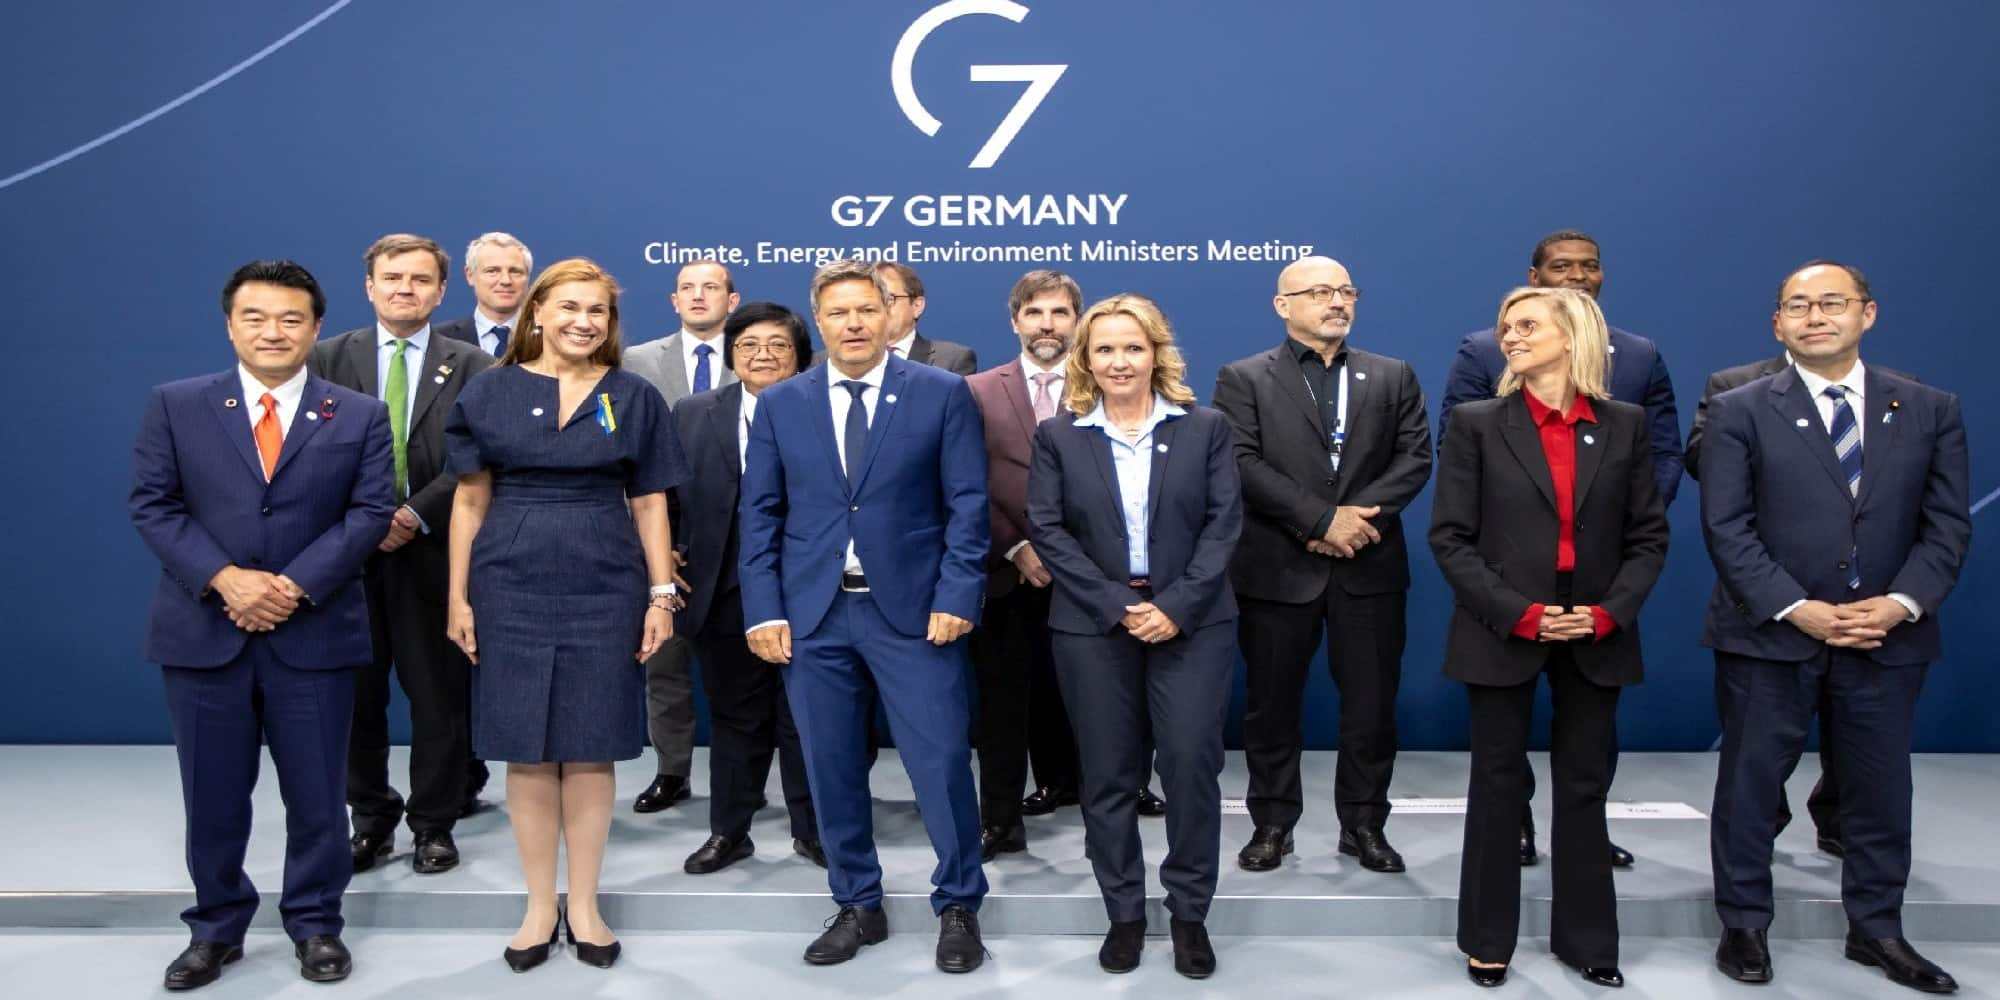 Σύνοδος των G7 στην Γερμανία για την κλιματική αλλαγή